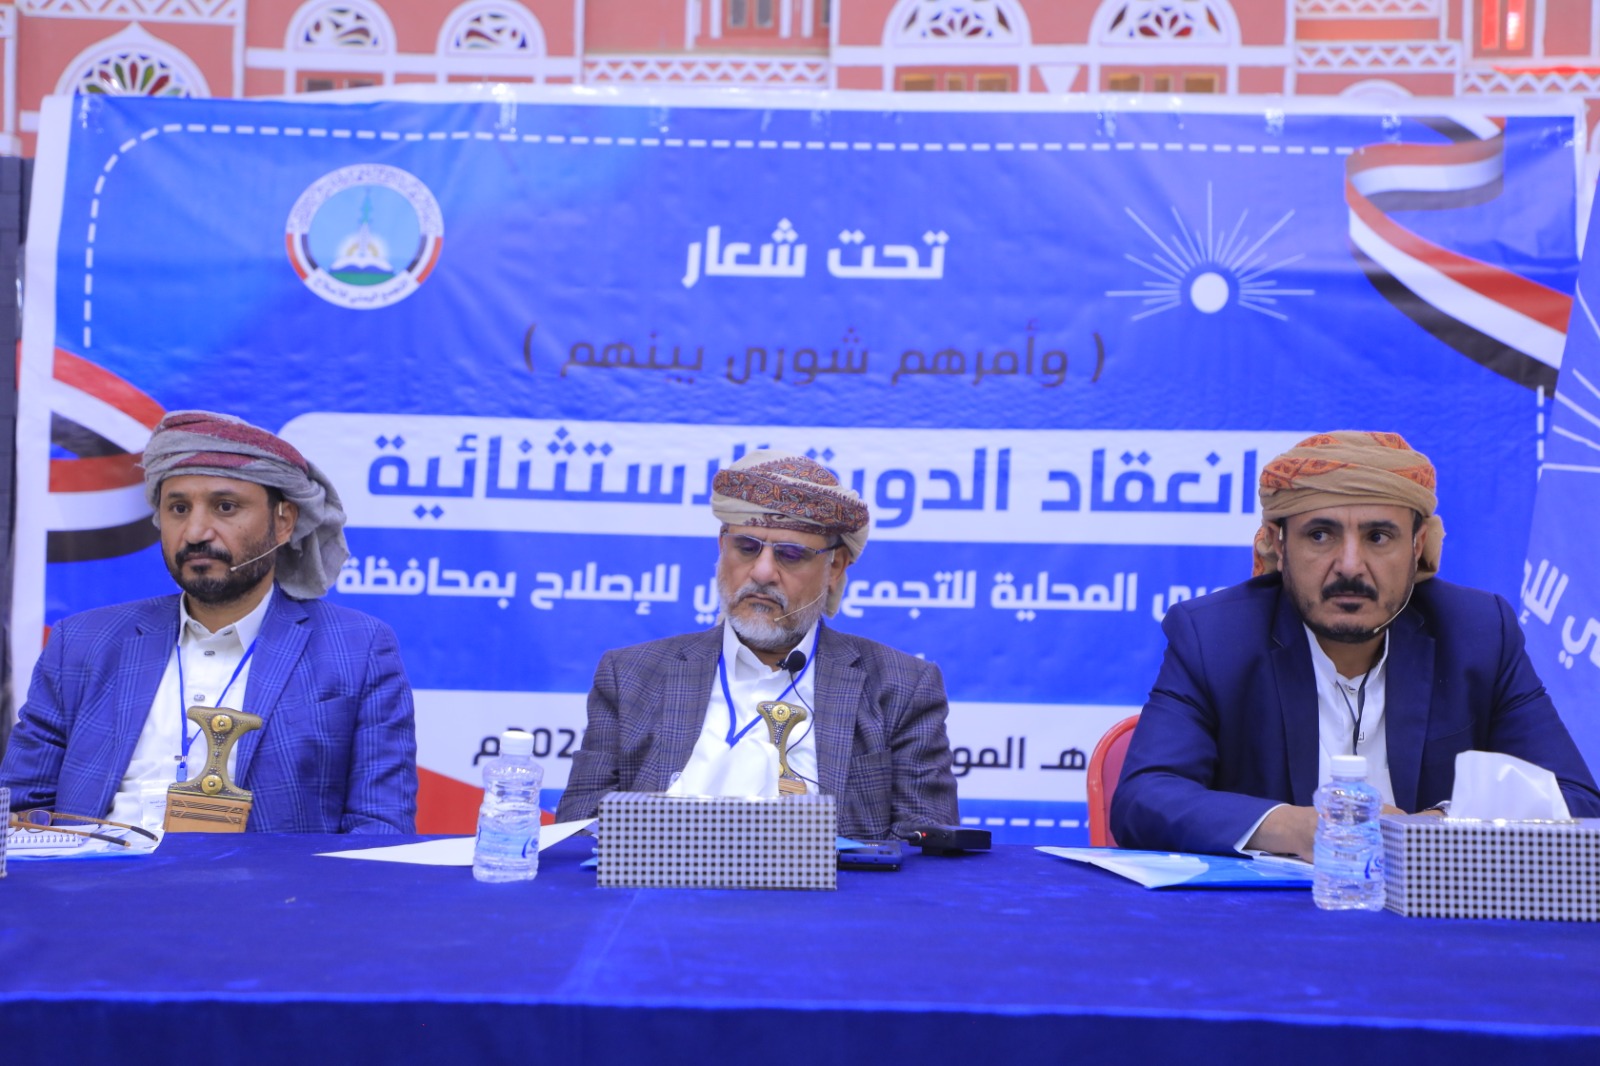  هيئة الشورى المحلية للإصلاح بمحافظة الجوف تعقد دورة استثنائية وتنتخب قيادة المكتب التنفيذي